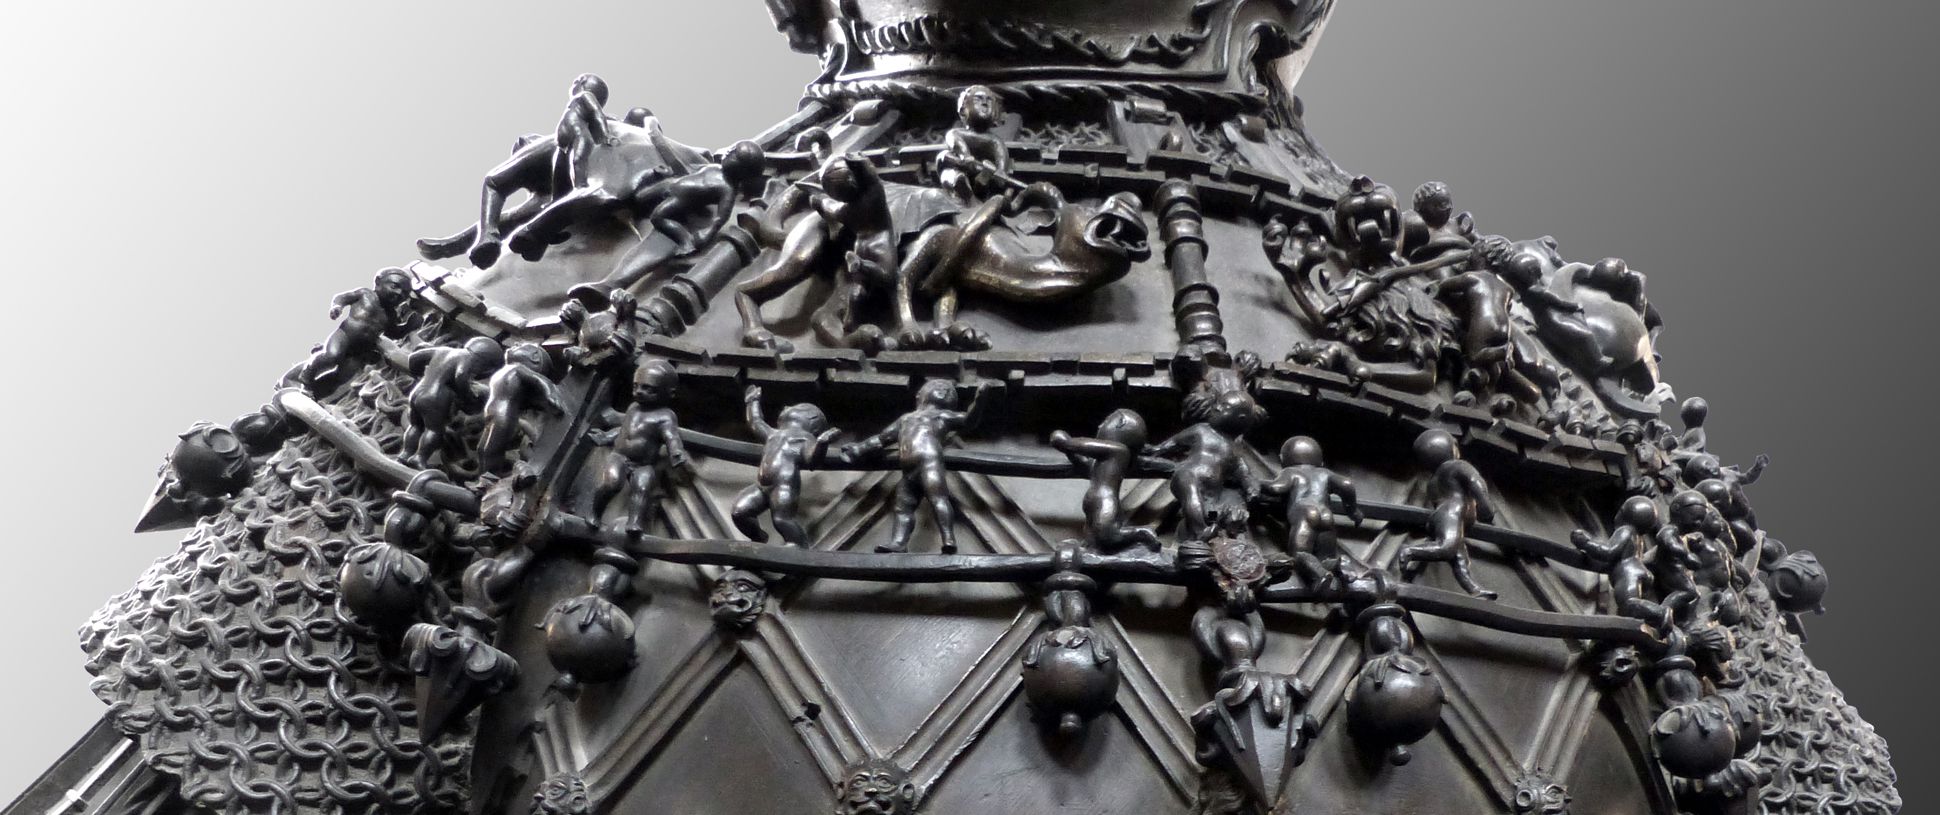 Ferdinand of Portugal (Innsbruck) Kette mit Amoretten und Reliefs mit auf Fabelwesen reitenden Knaben